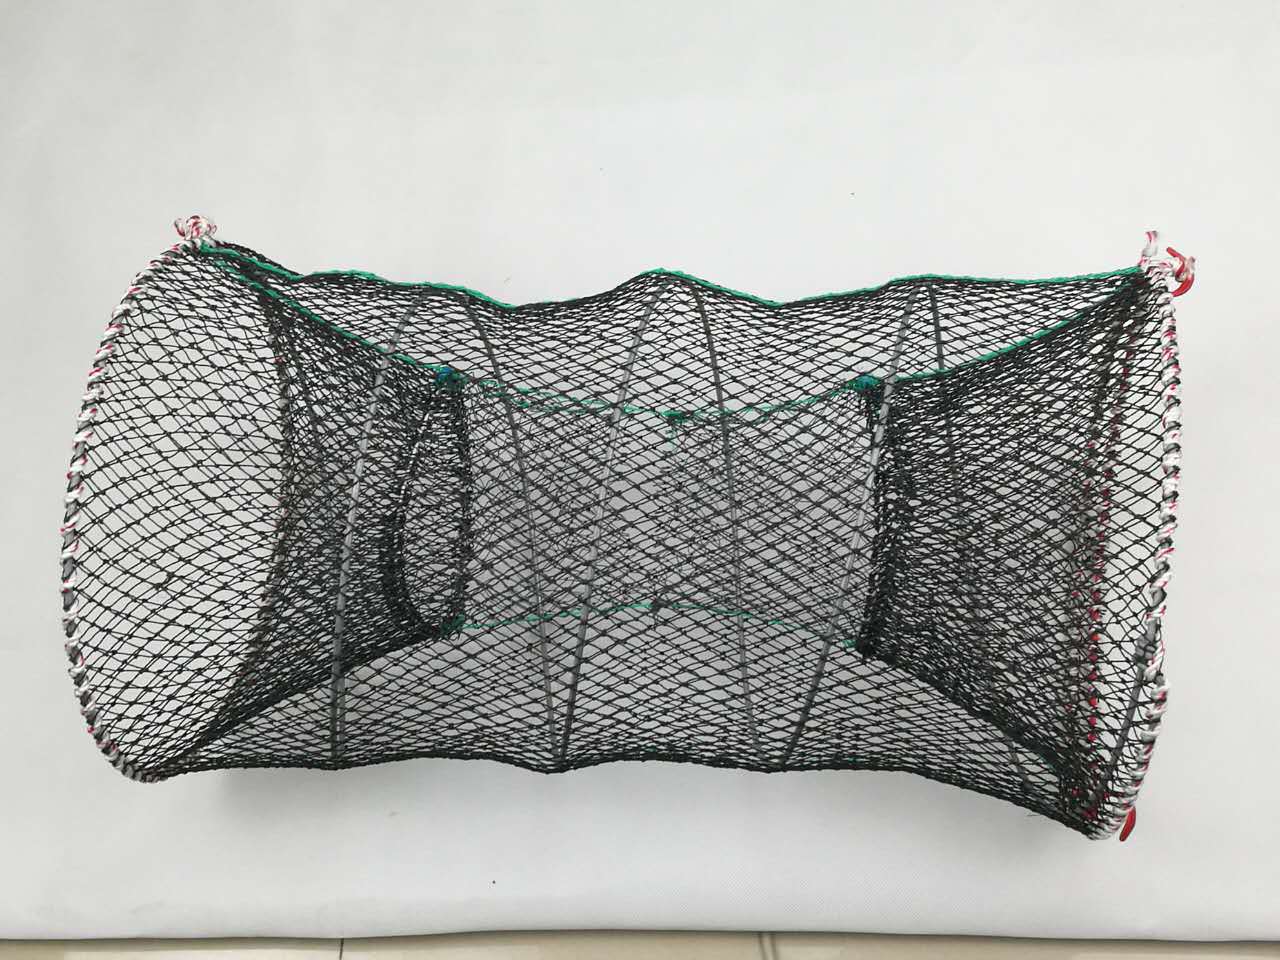 捕鱼网鱼笼折叠鱼网渔网手抛网鱼袋捕鱼笼-阿里巴巴